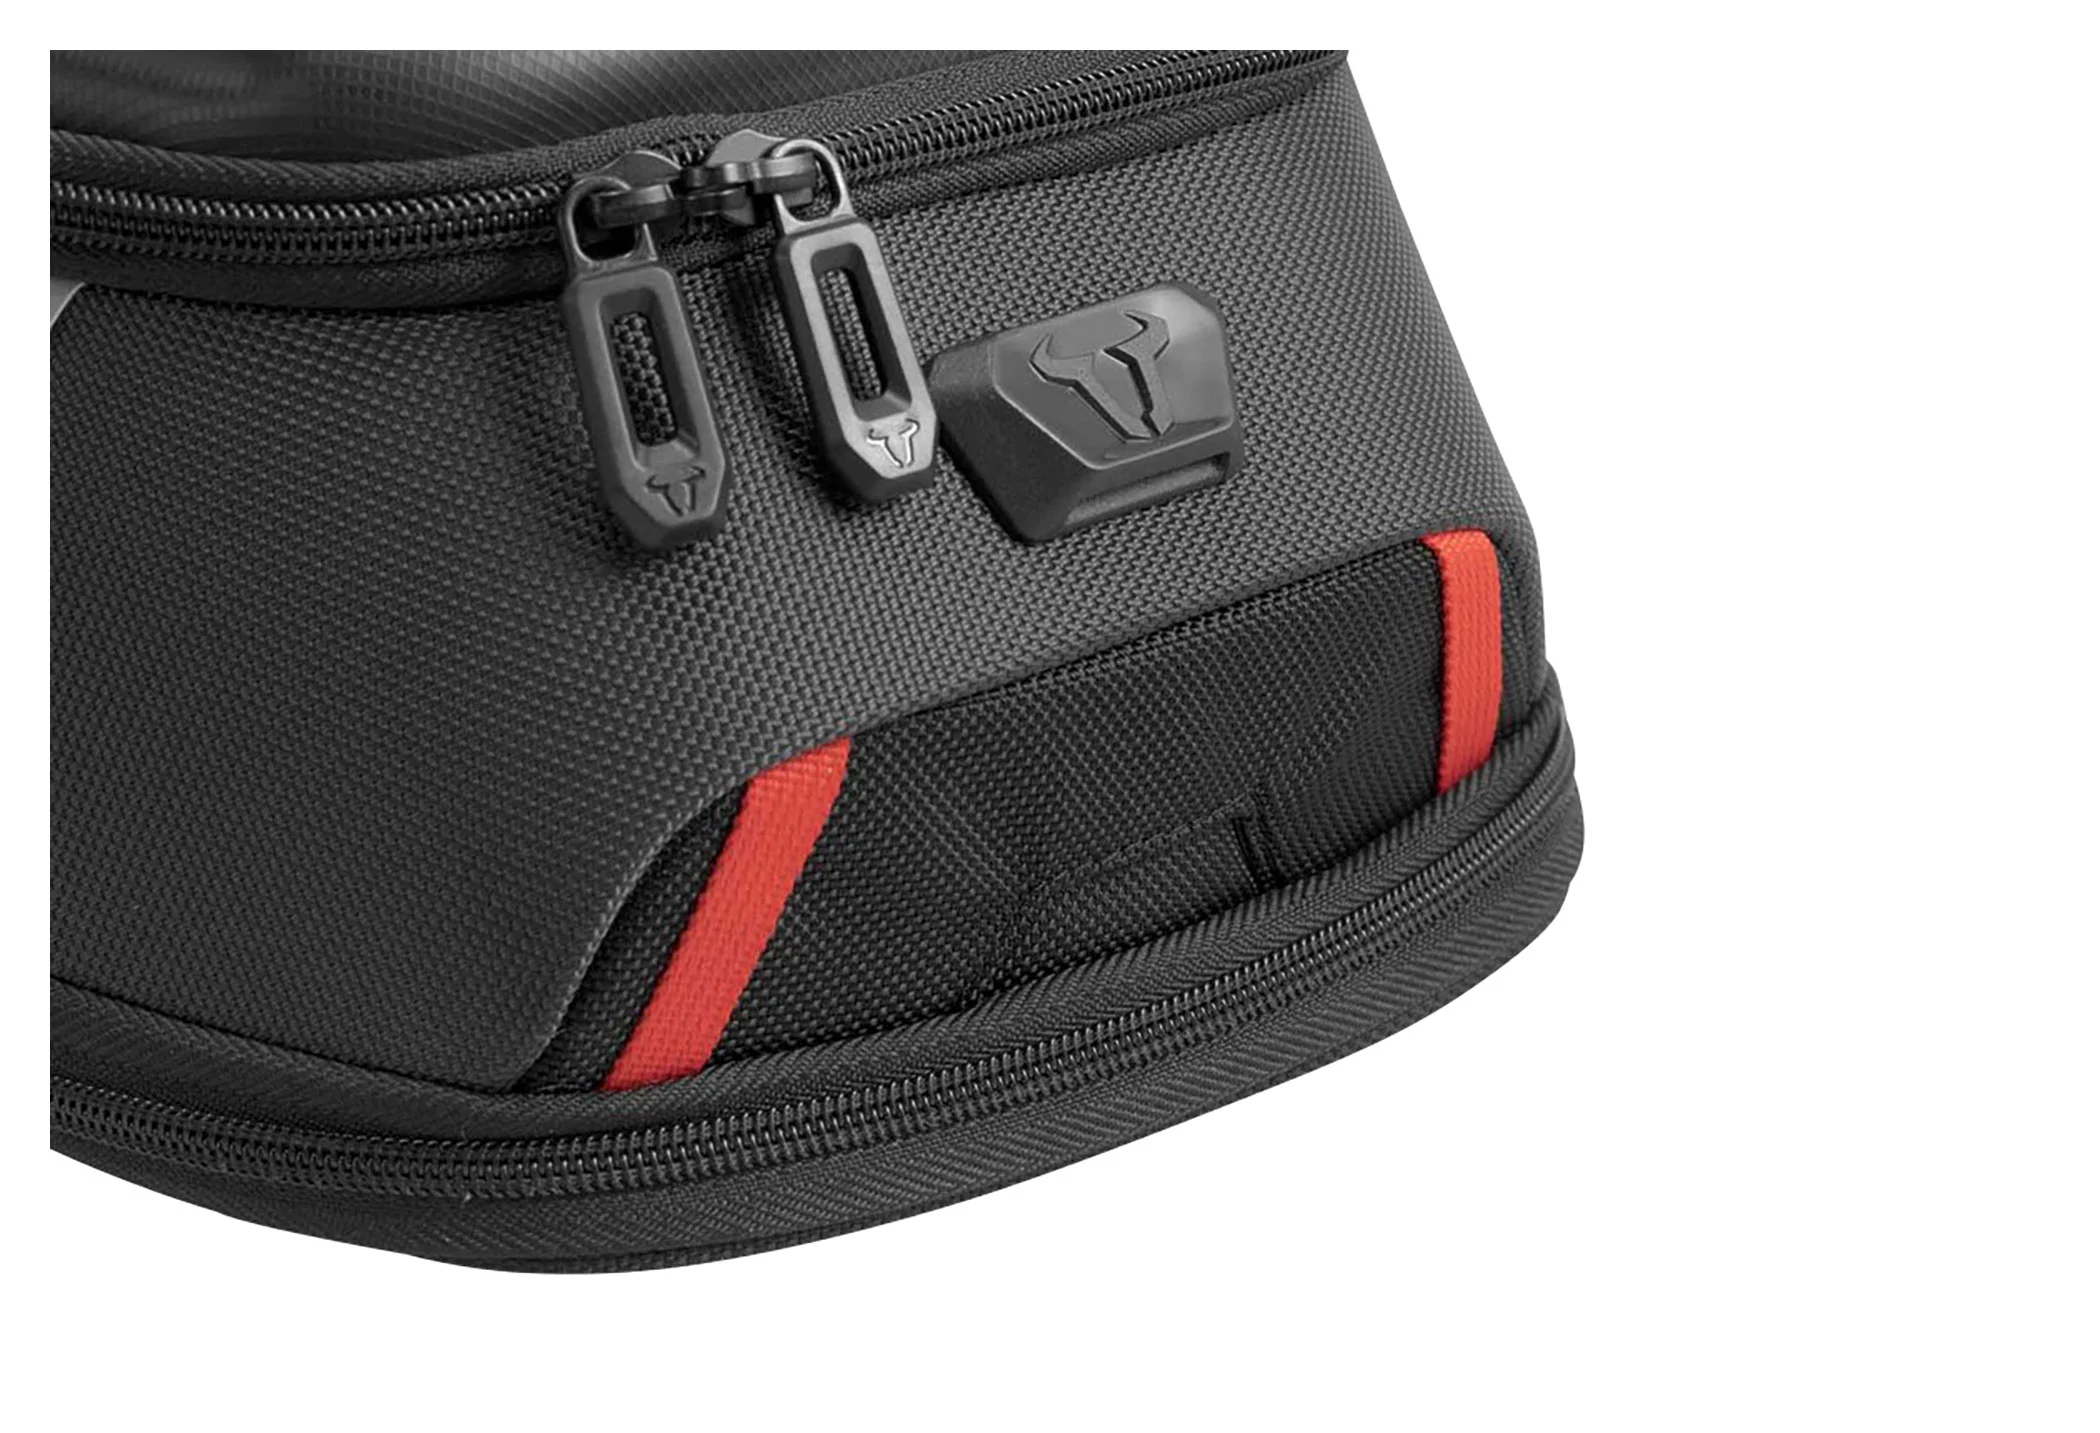 Magnet Tanktasche ST14 für Smartphone/Navi schwarz